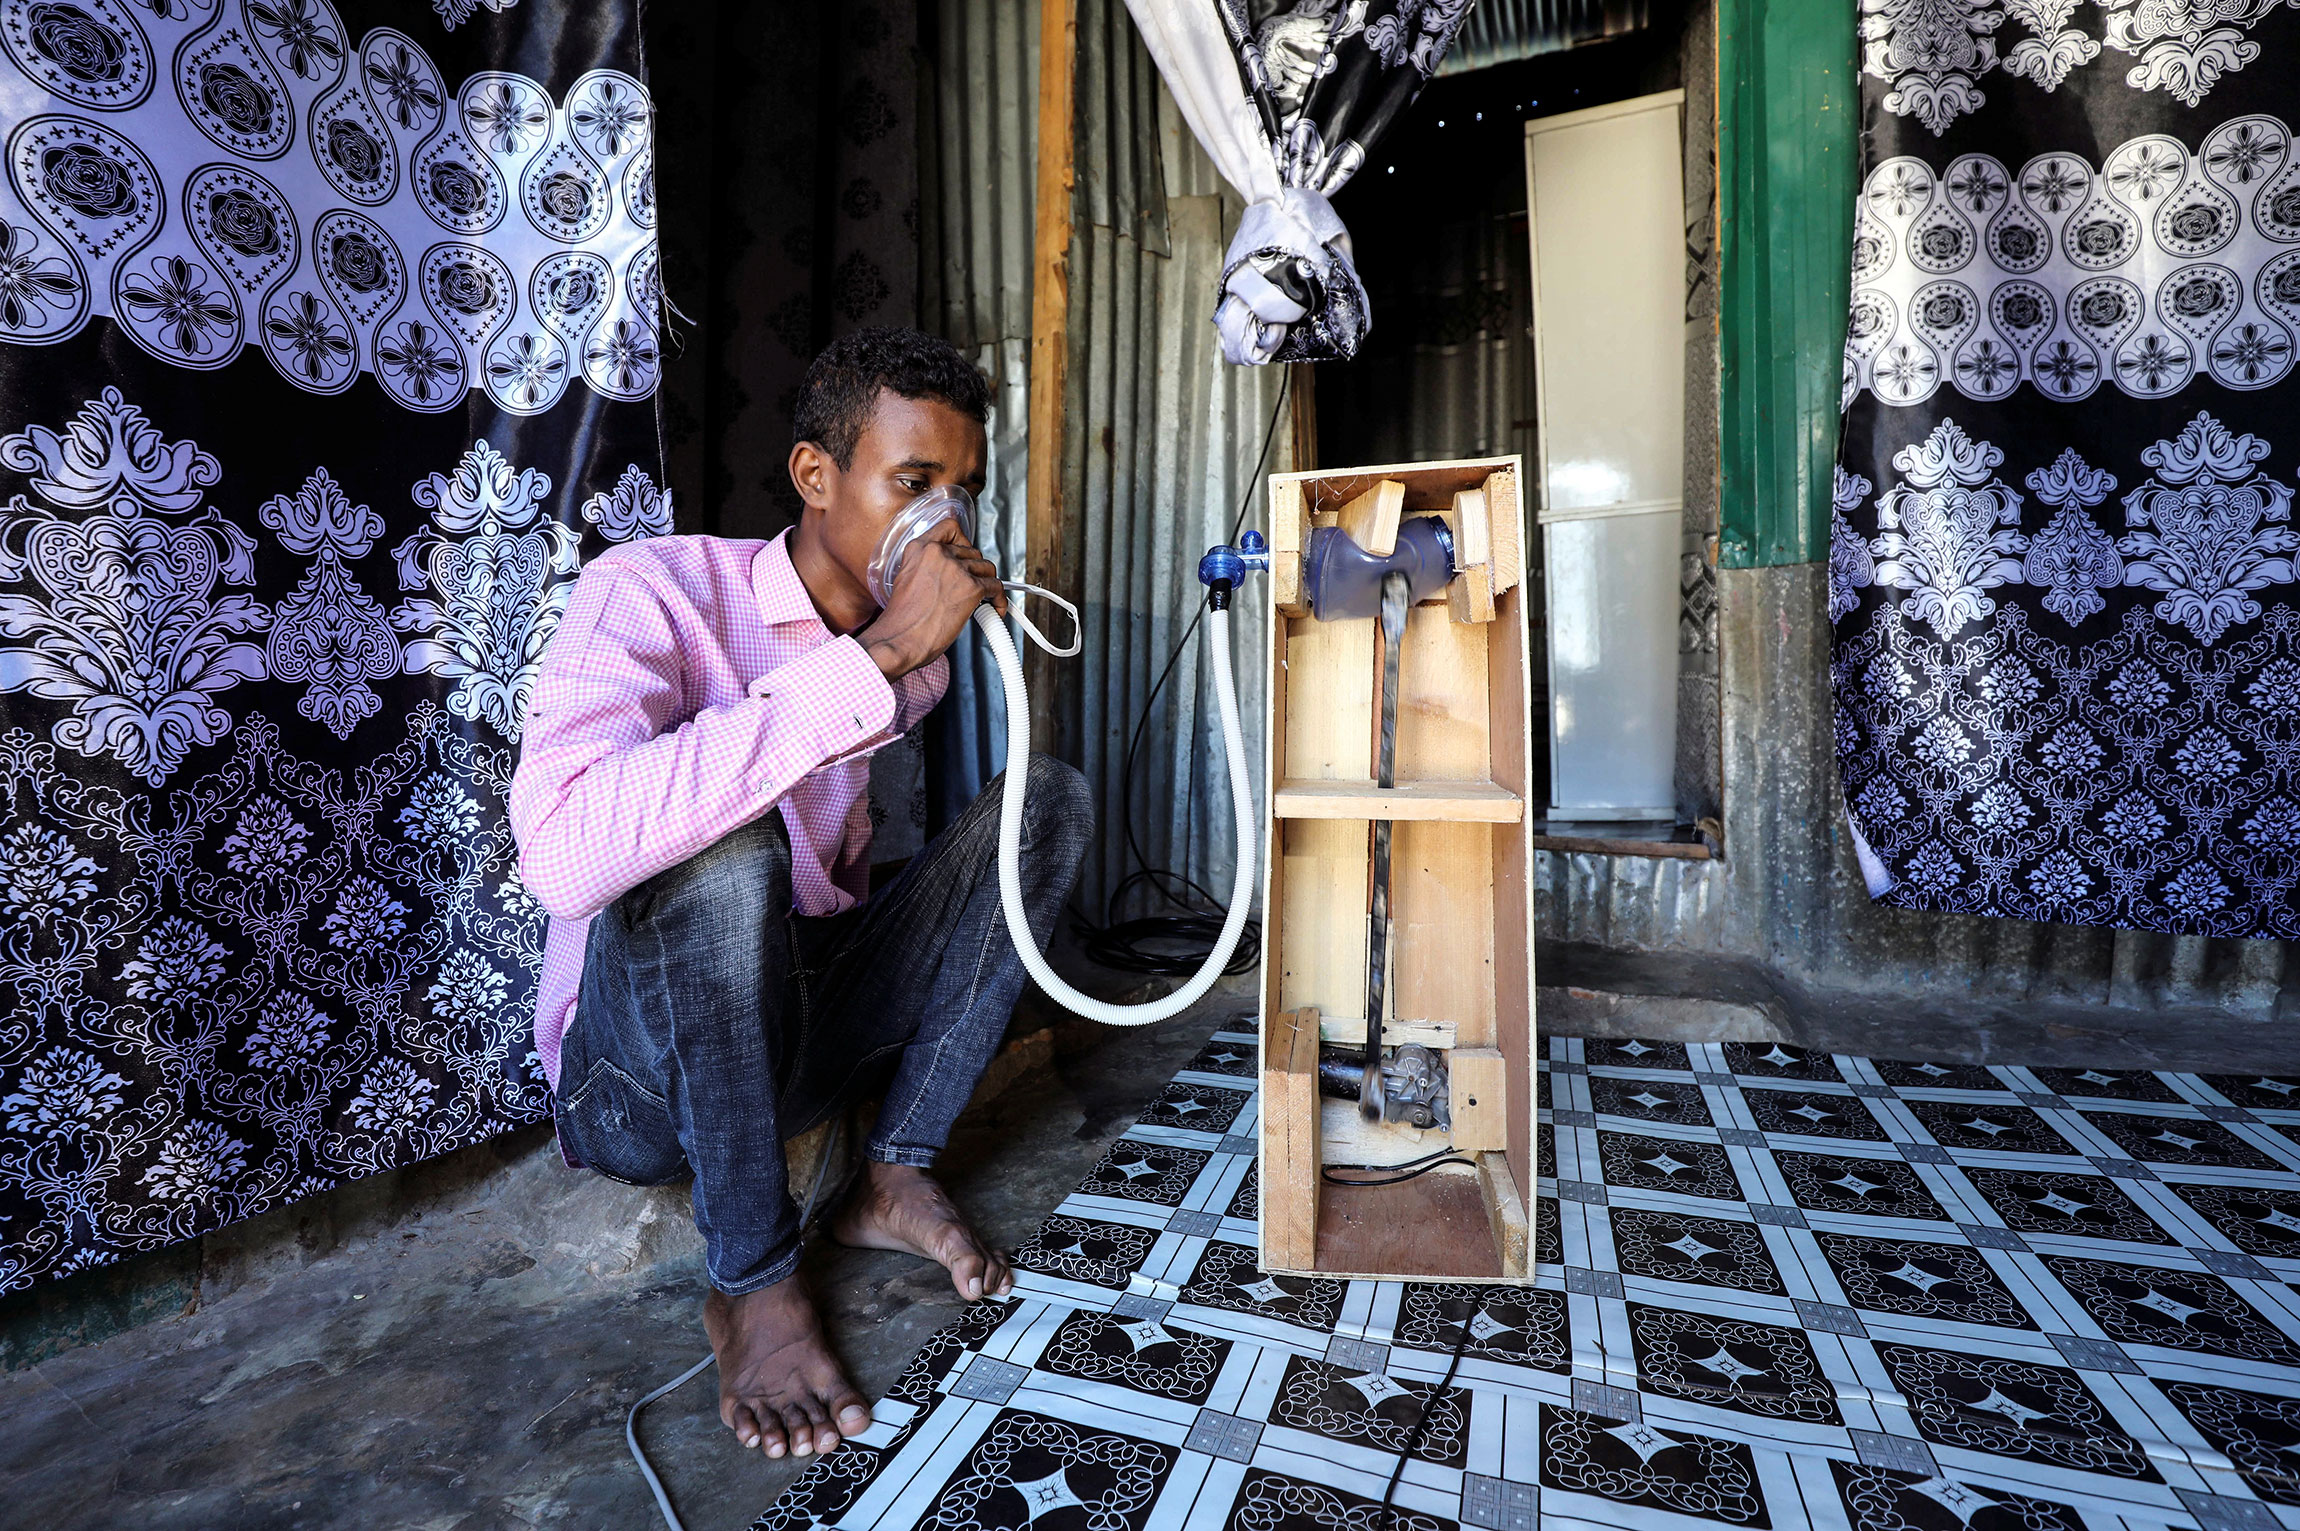 Сомали. Мохаммед Адаве, 21-летний инженер-механик, тестирует самодельный аппарат искусственной вентиляции легких.

По данным на 27 мая&nbsp;в Сомали зафиксированы​ 1689 cлучаев заболевания COVID-19
